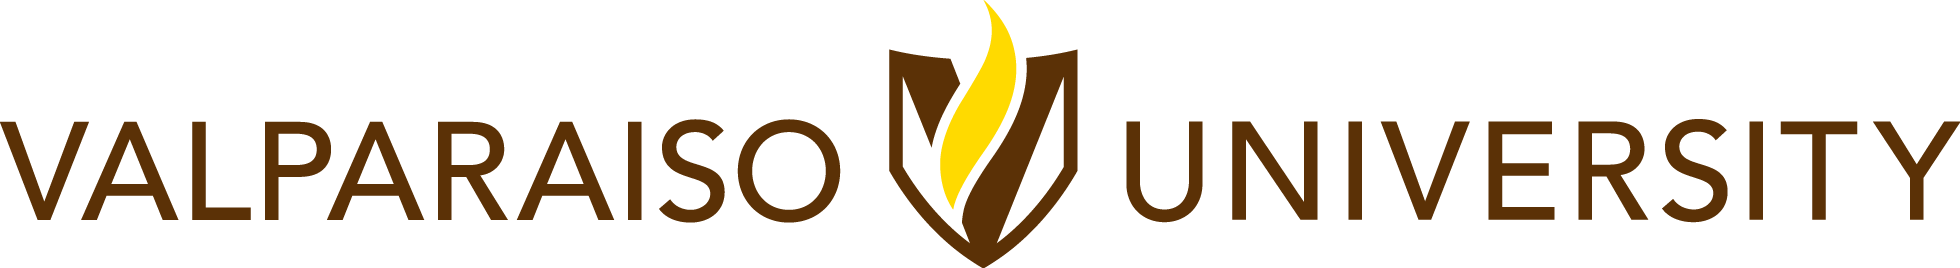 Valparaiso Crusaders Logo - Our Logos. Valparaiso University Brand